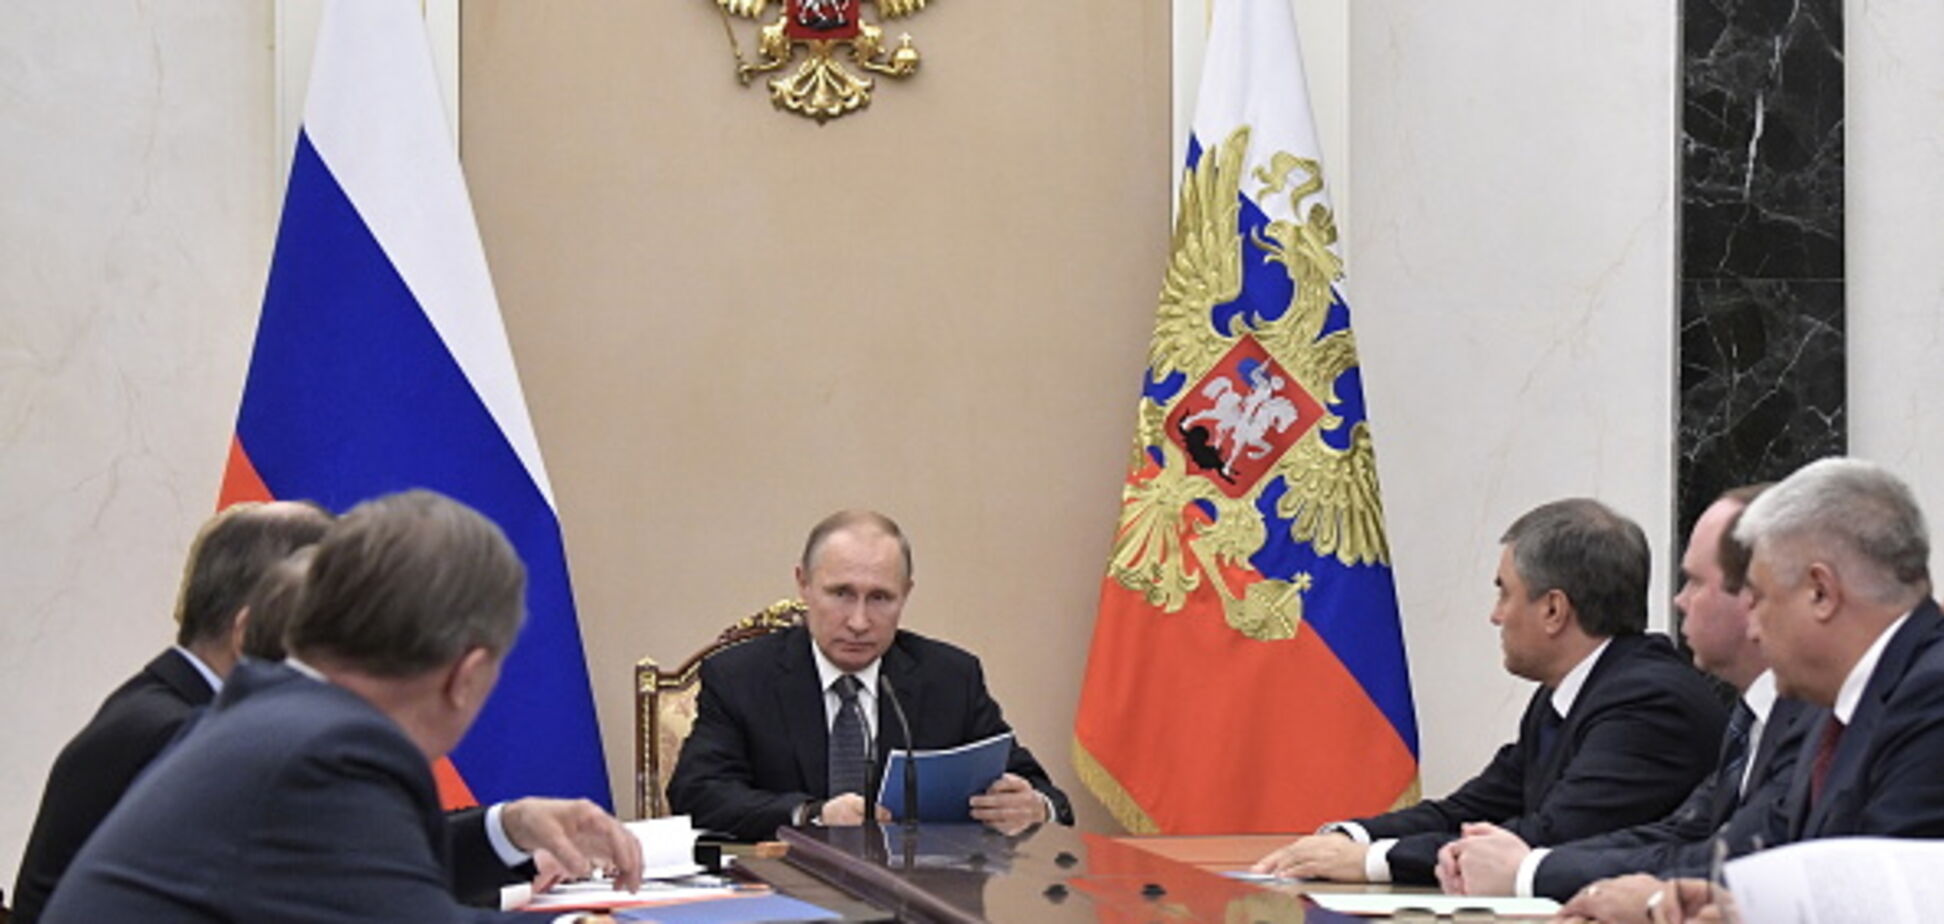 Путин обговорил с российской верхушкой ситуацию в Украине